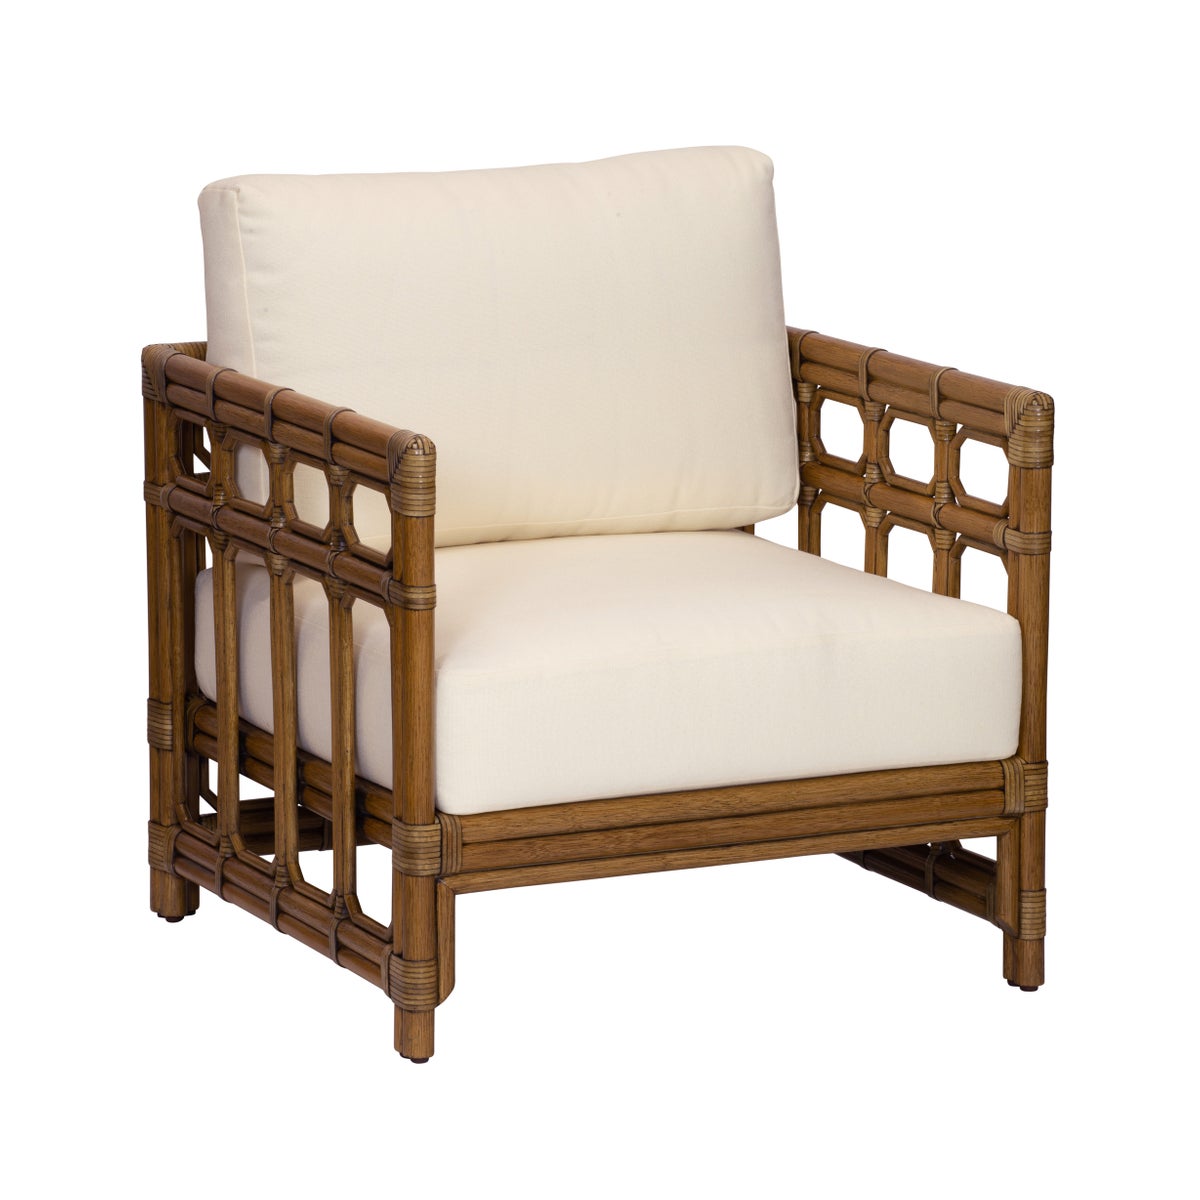 Regeant Lounge Chair in Nutmeg